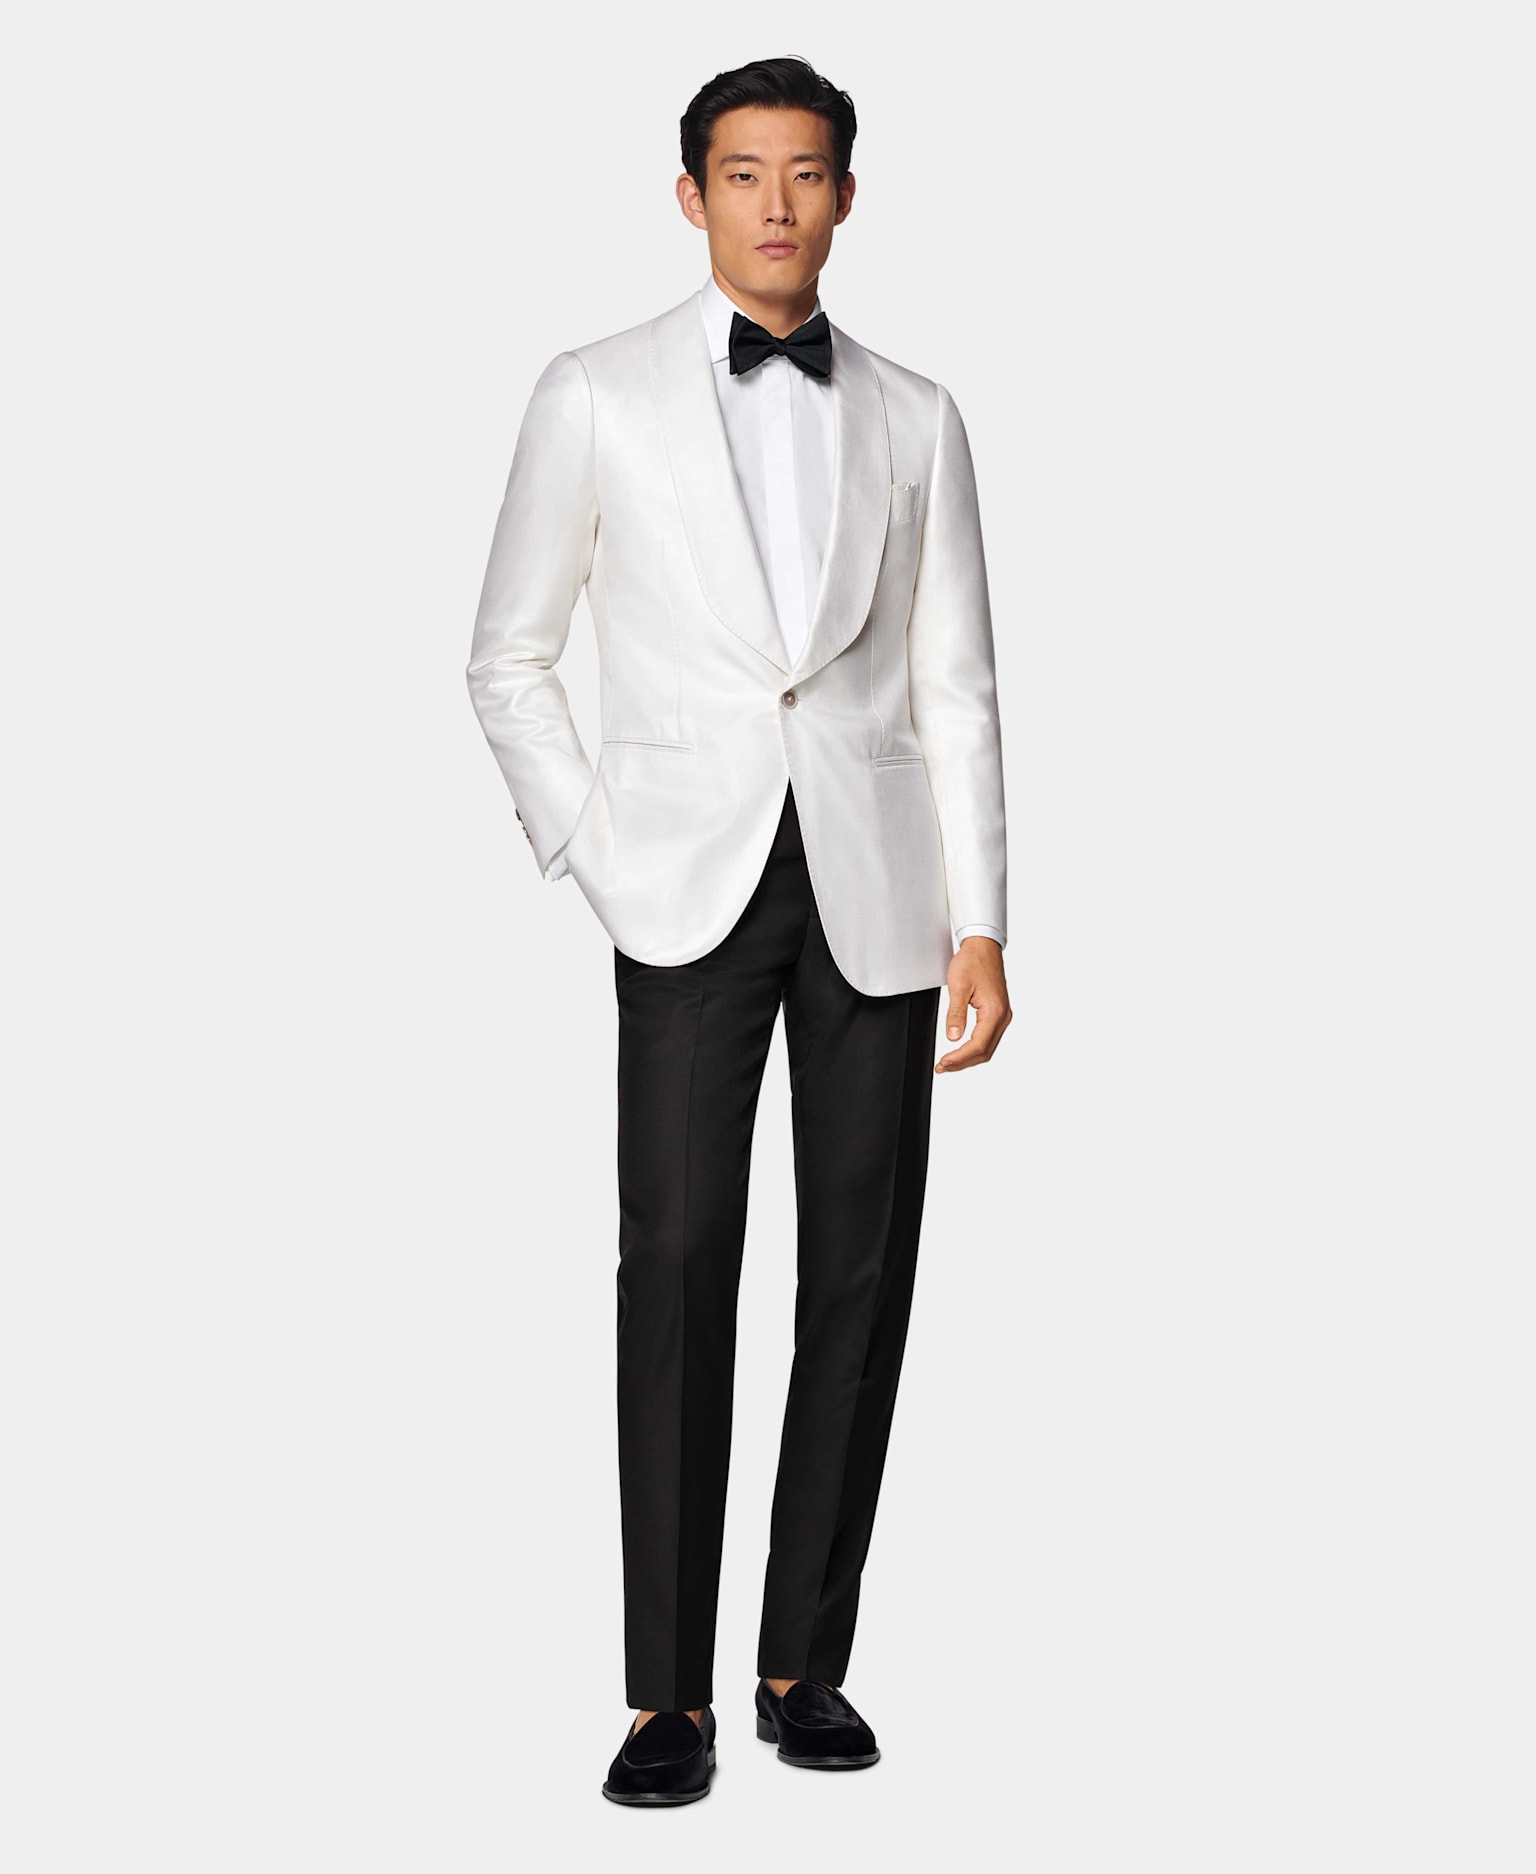 Veste de smoking blanche à col châle avec pantalon noir, chemise blanche à gorge cachée et nœud papillon en soie noir.